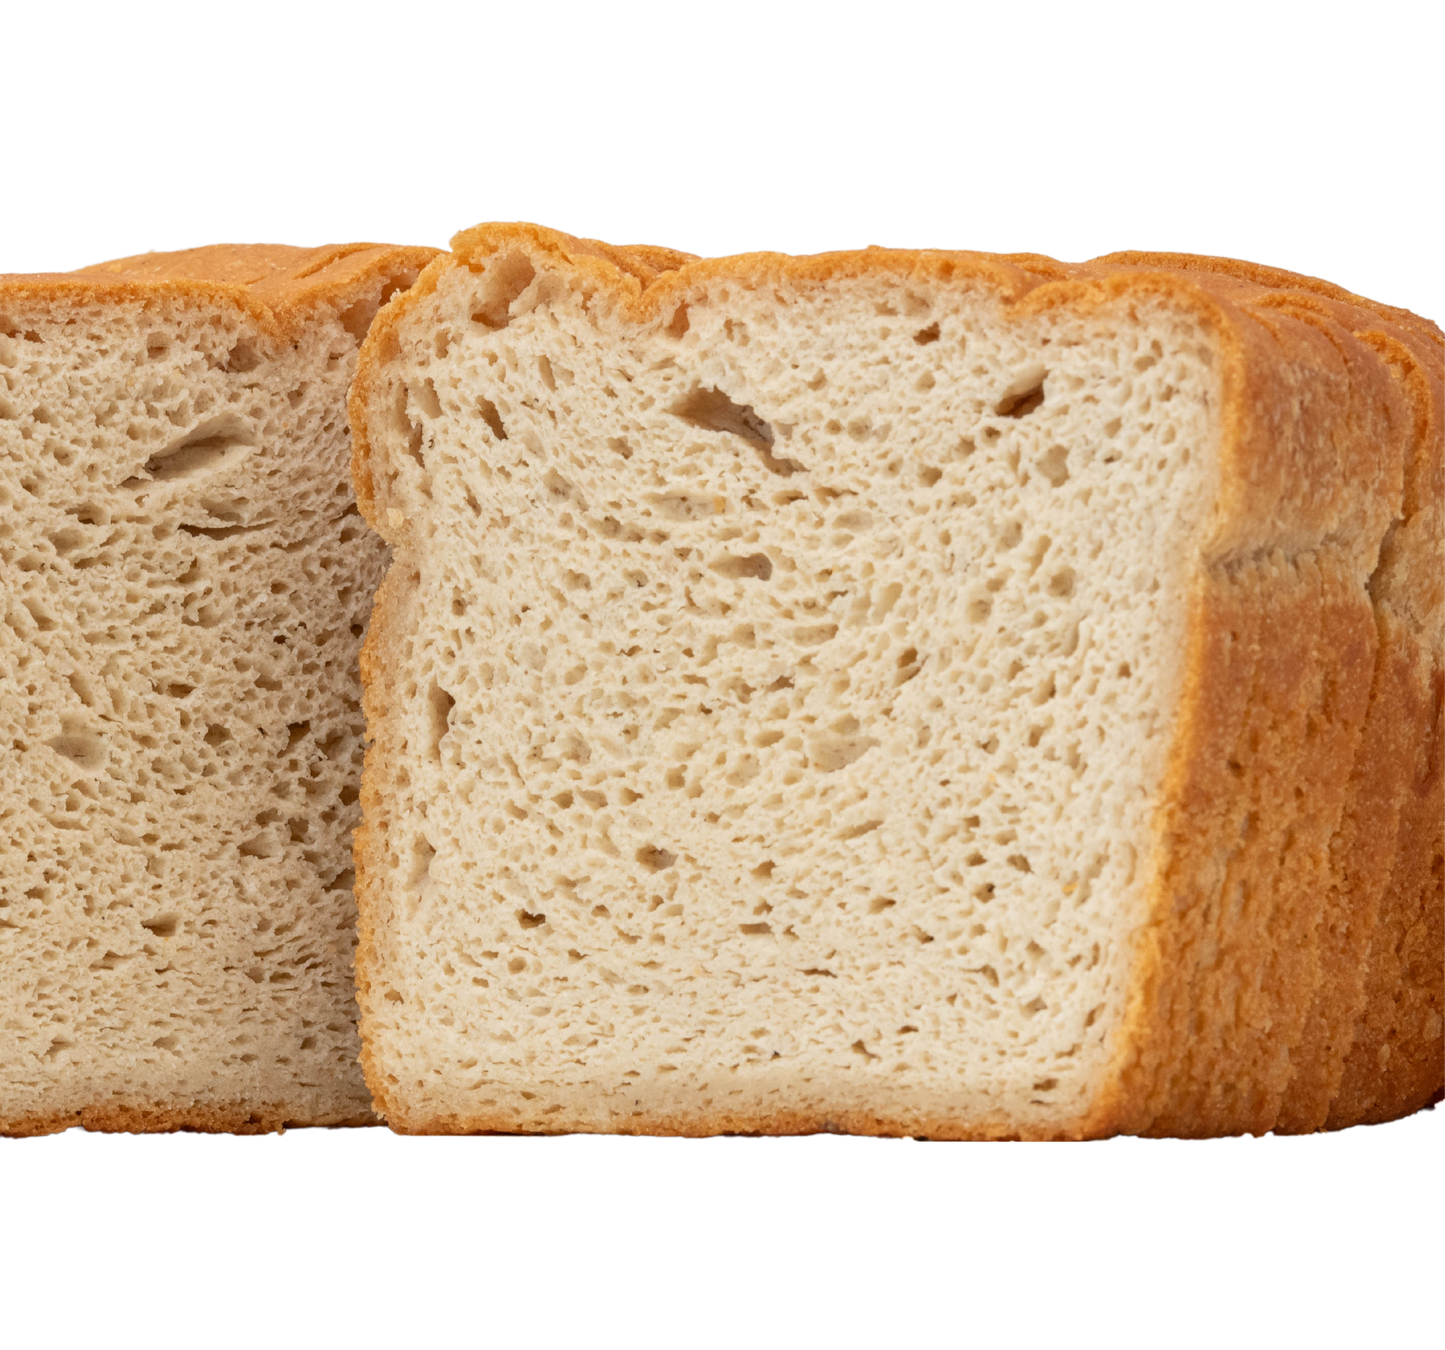 5 Grain Sandwich Bread - Vegan